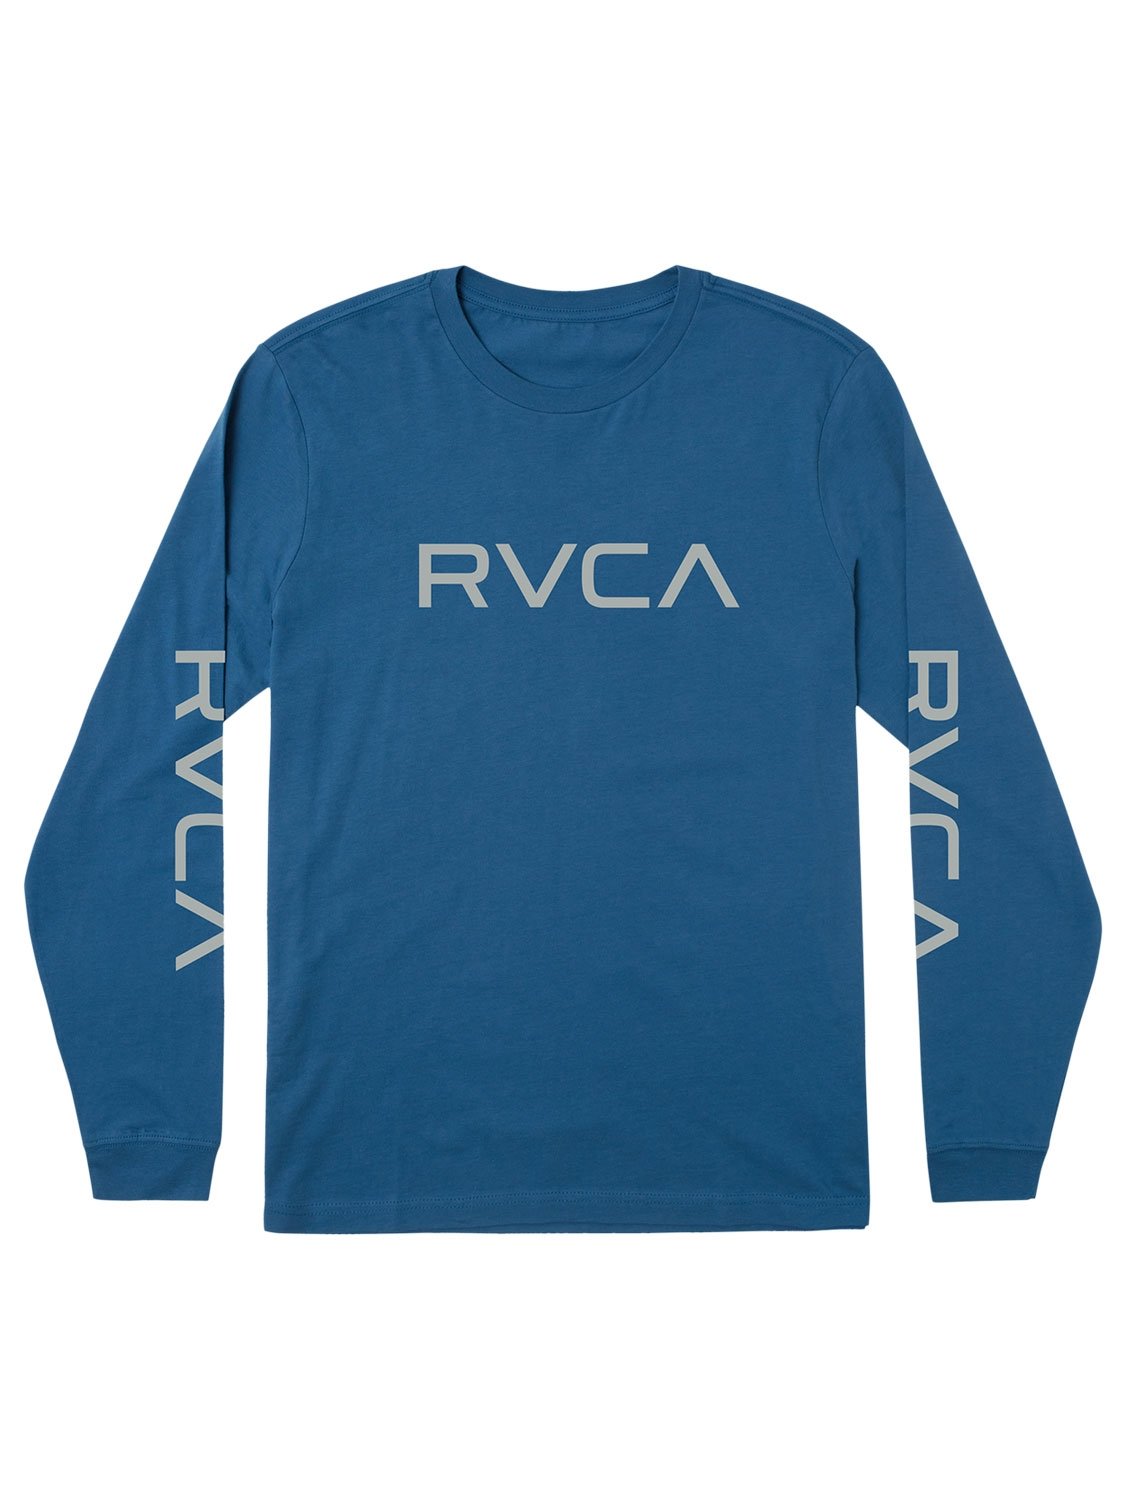 Big RVCA - T-Shirt for Men